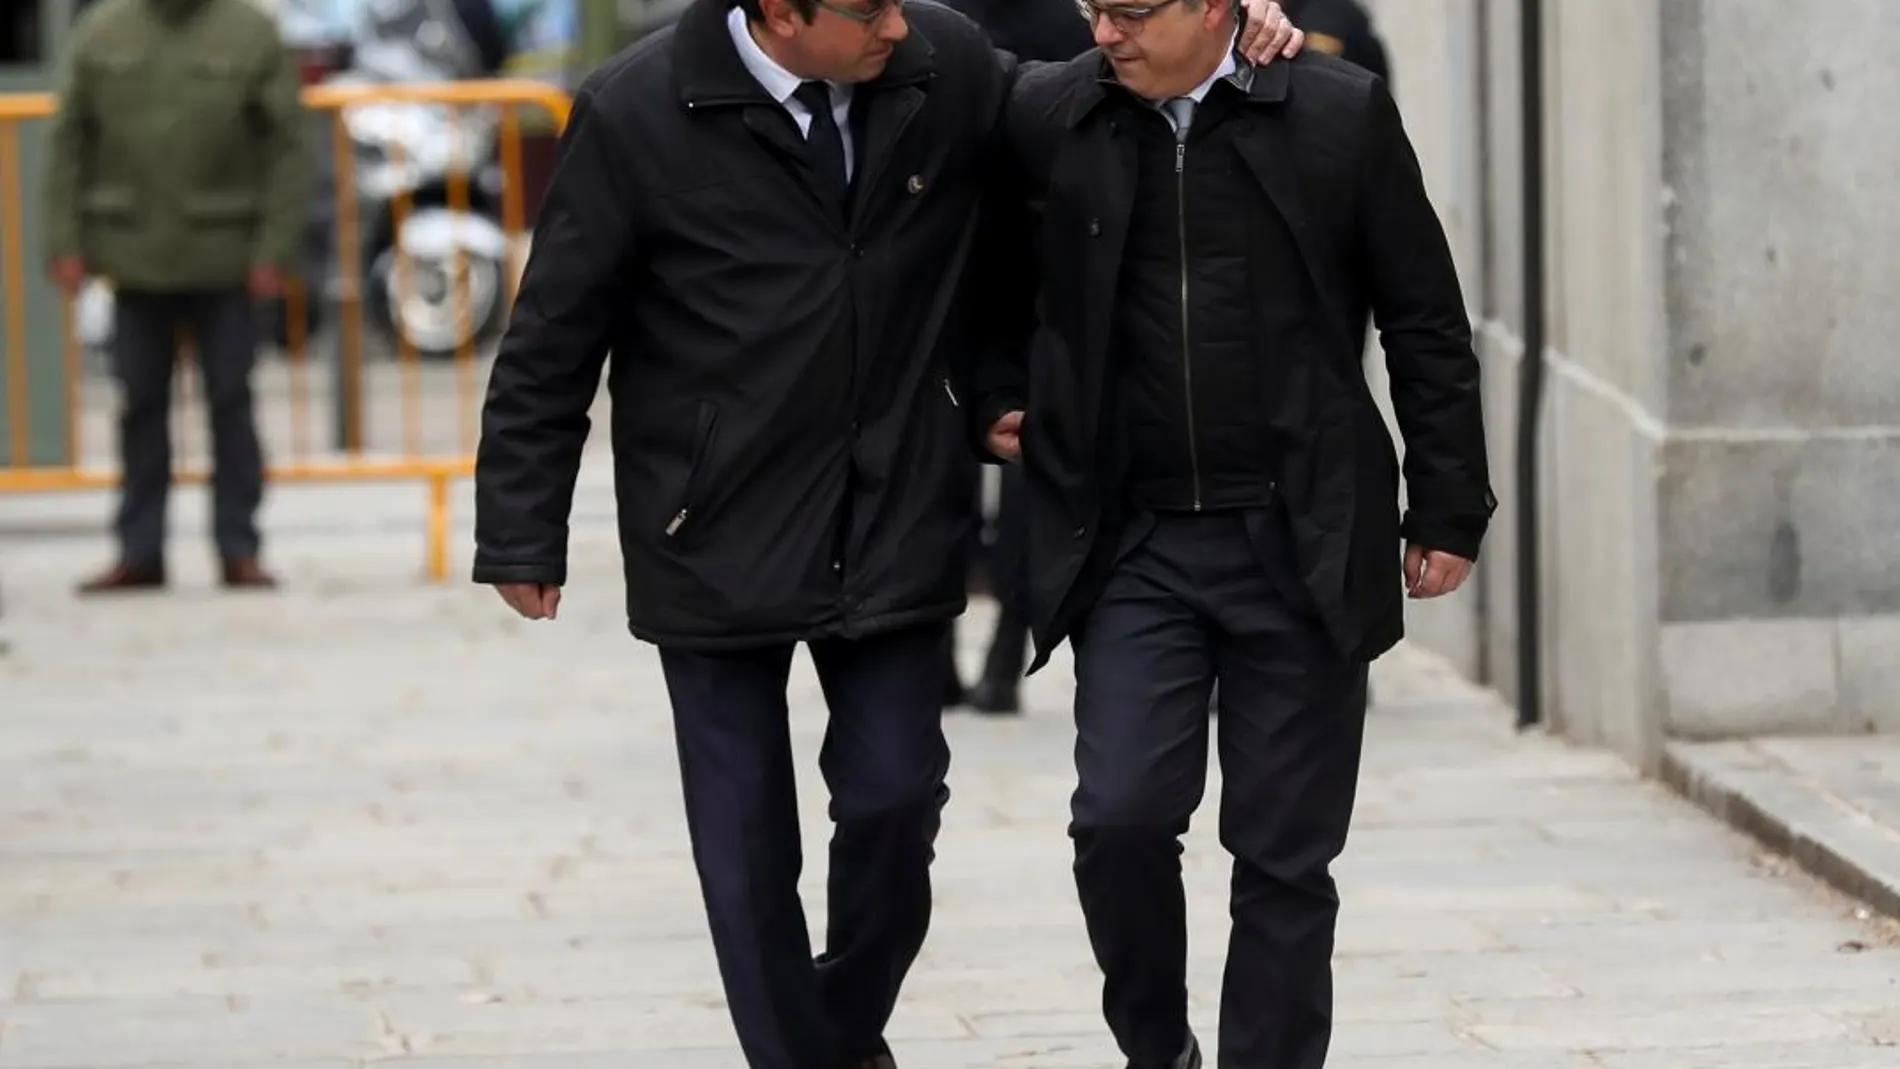 Josep Rull y Jordi Turull, dos de los ex diputados encarcelados por el «procés». Foto: Reuters